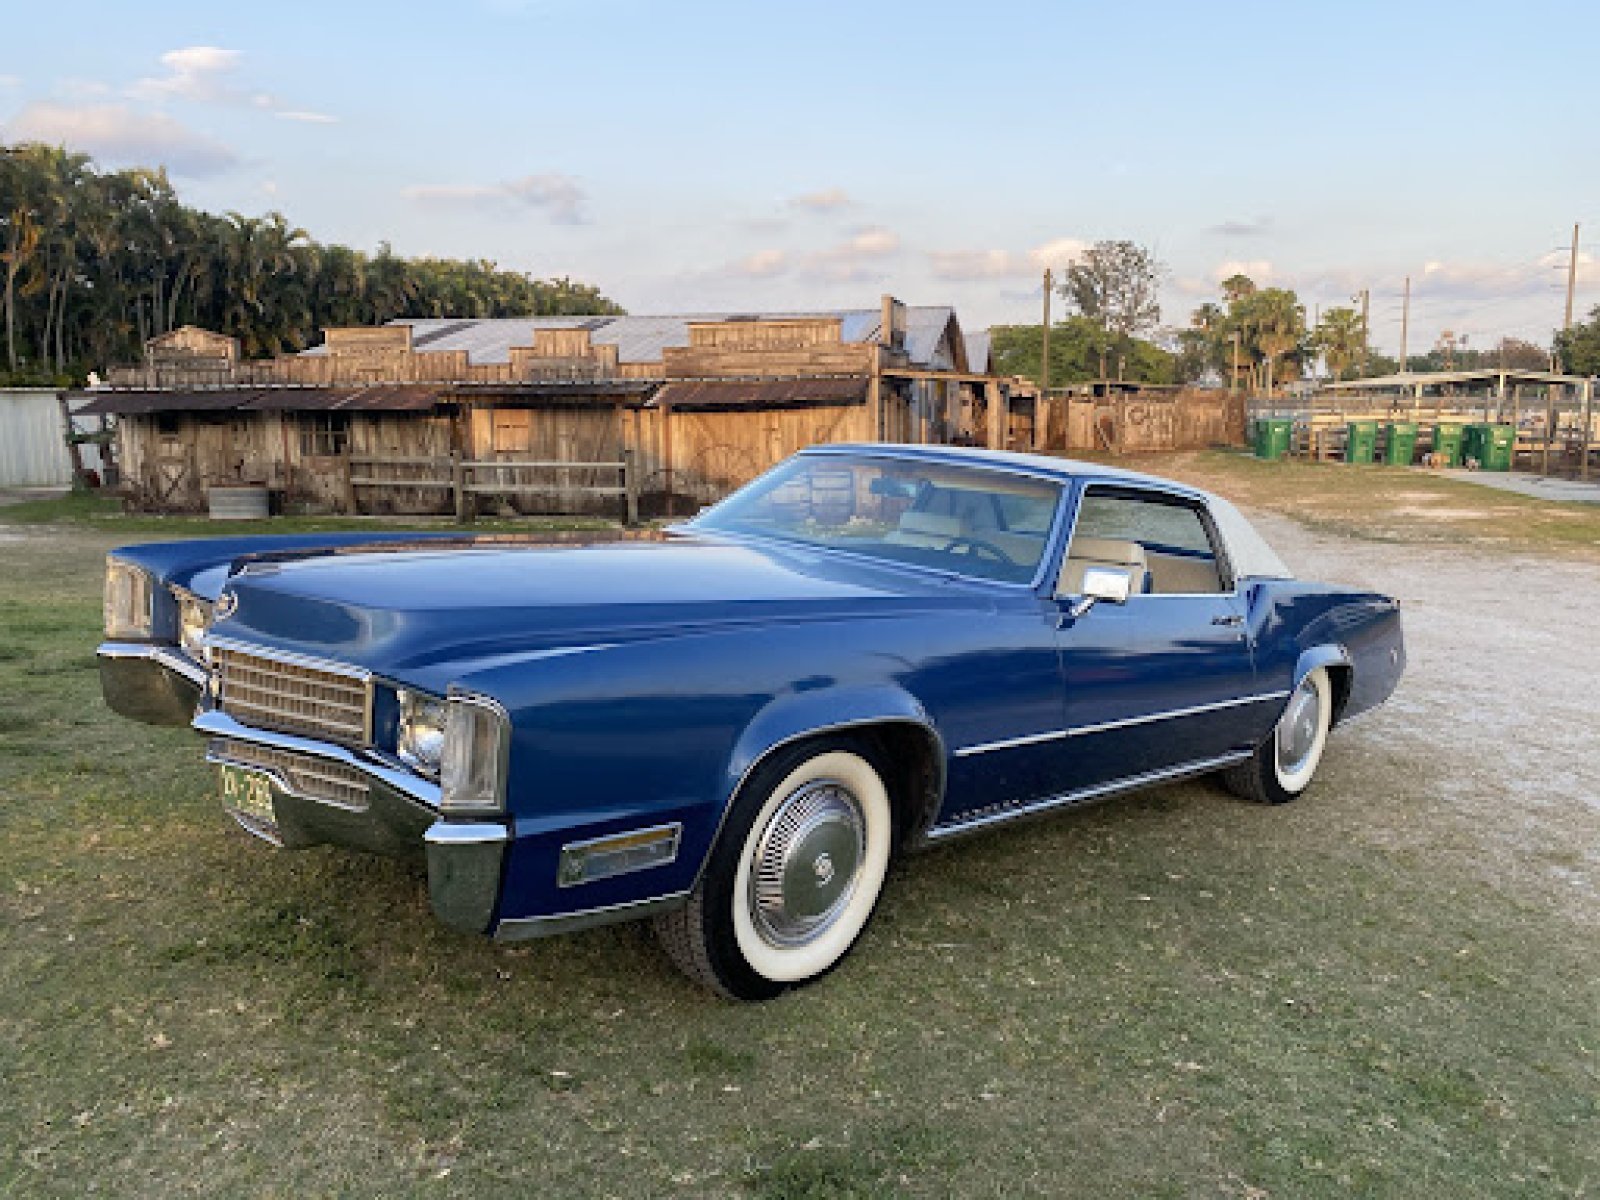 1970 Cadillac El Dorado